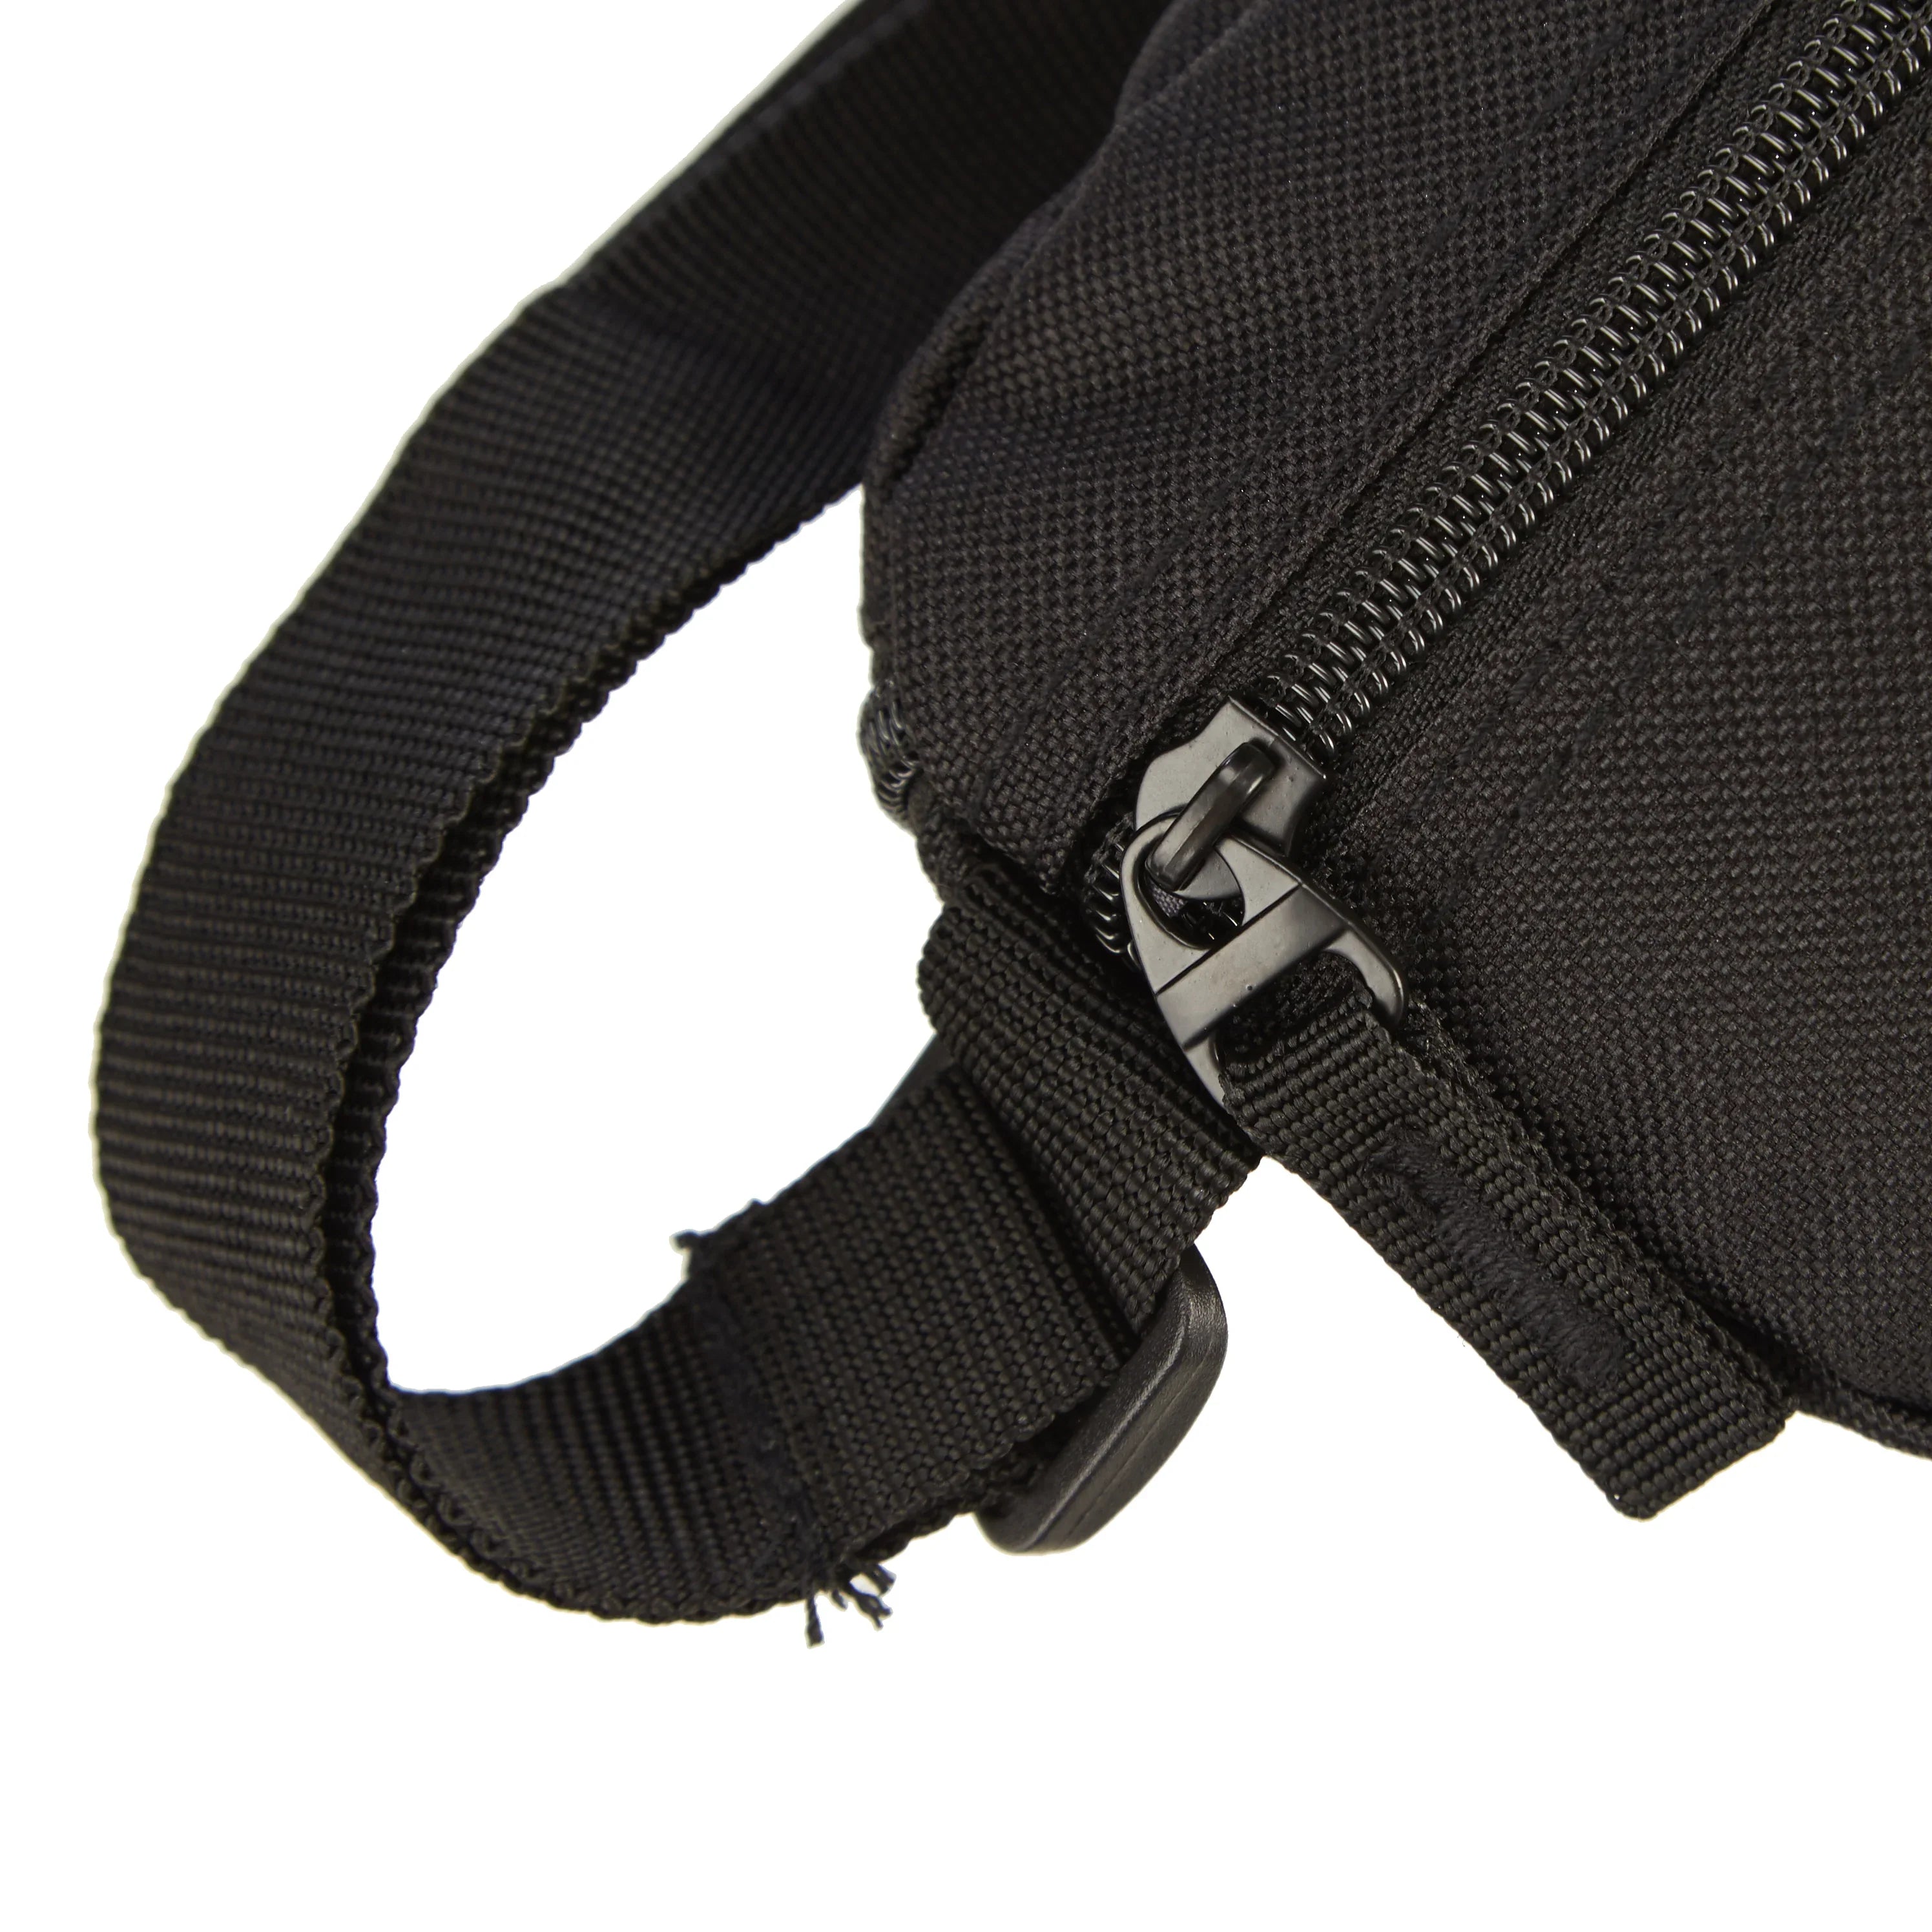 koffer-direkt.de Two Travel II belt bag 23 cm - gray stripe